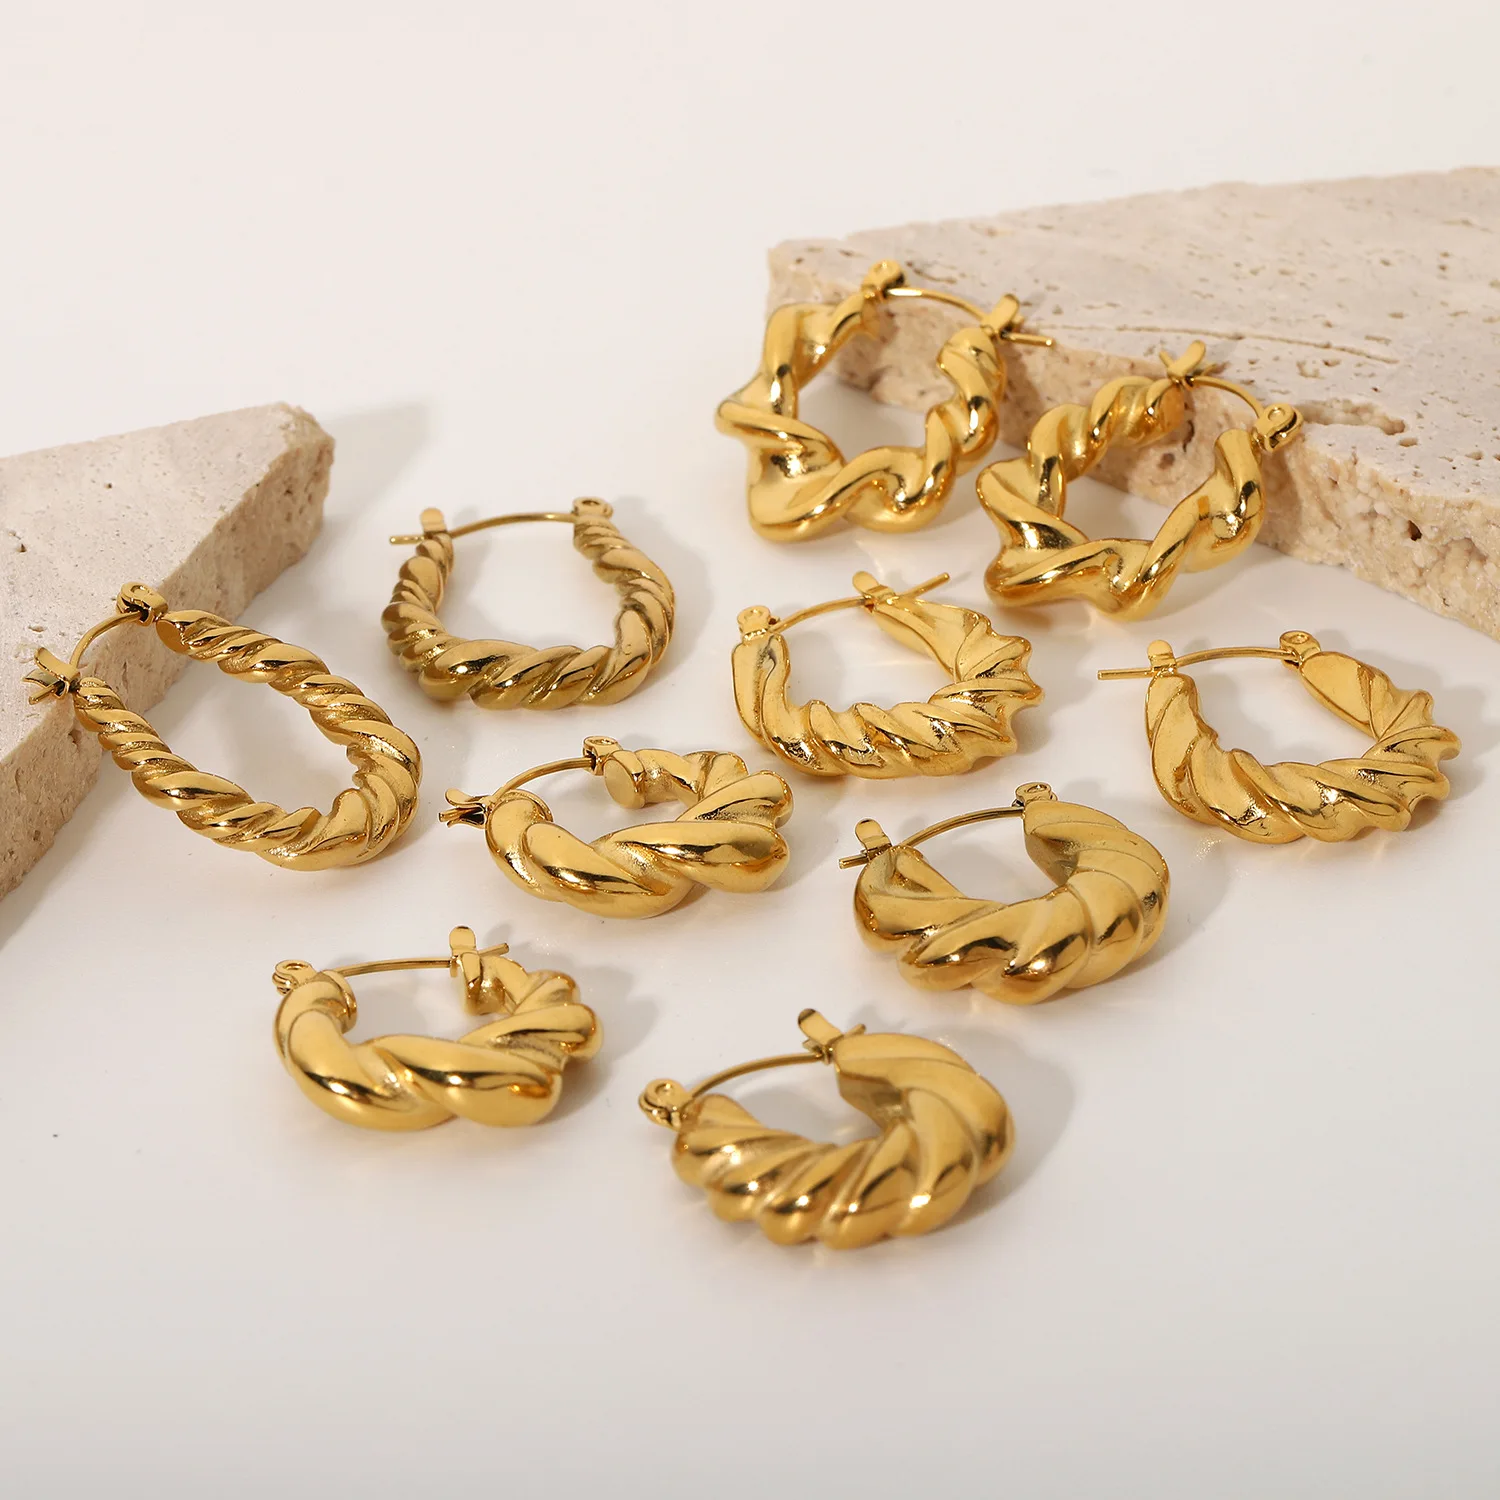 

Hot sale earrings 18K gold-plated stainless steel twist wreath titanium steel earrings geometric earrings jewelry